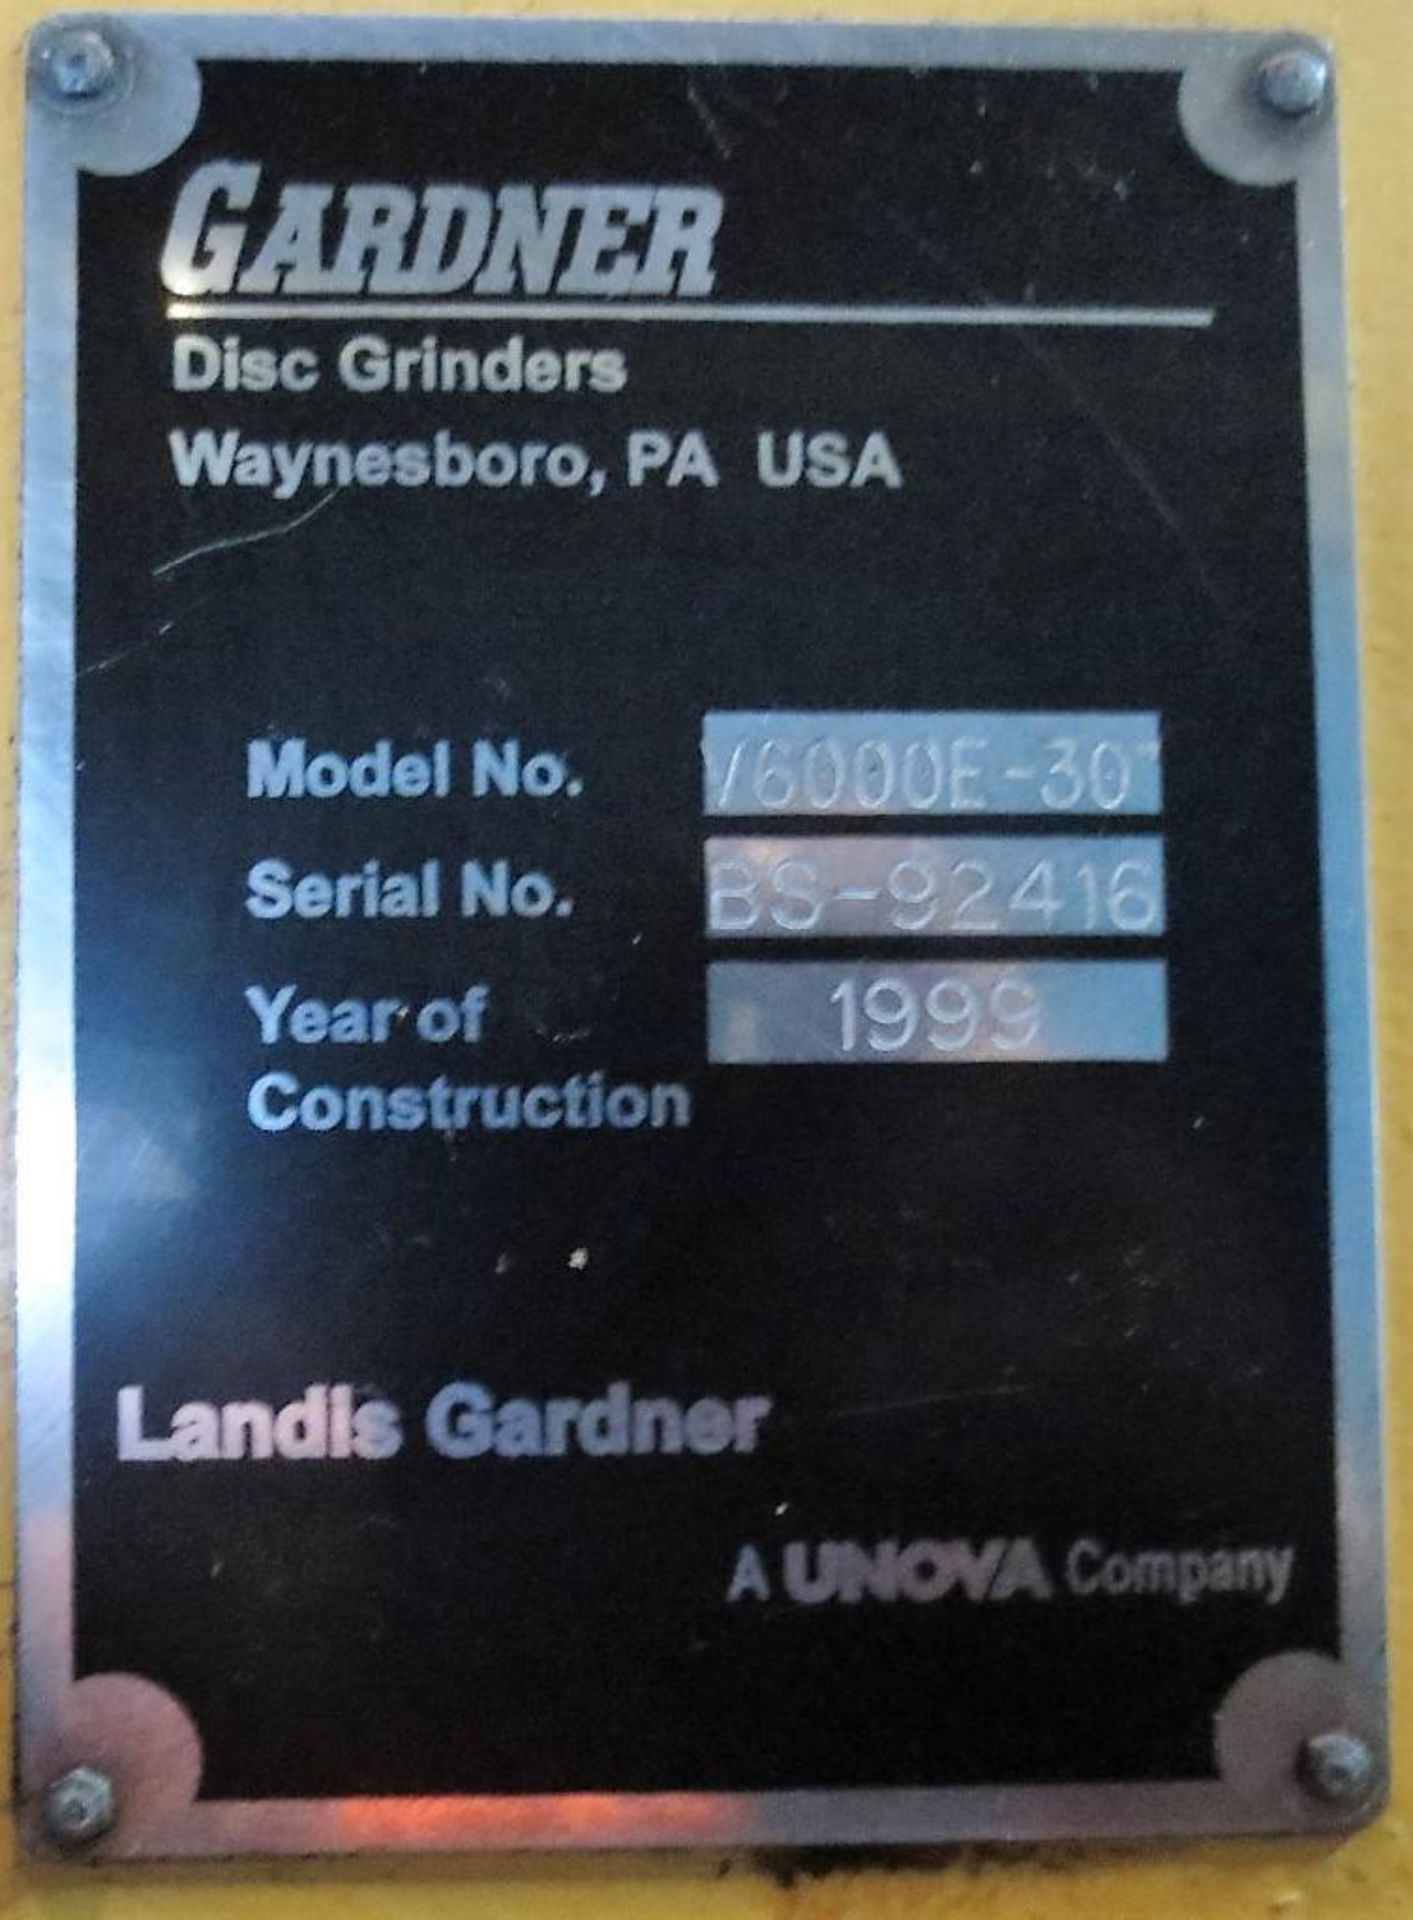 Gardner 30" Model V6000E-30 Vertical Disc Grinder S/N: BS-92416 (1999) Loading Fee is $950.00 - Image 8 of 10